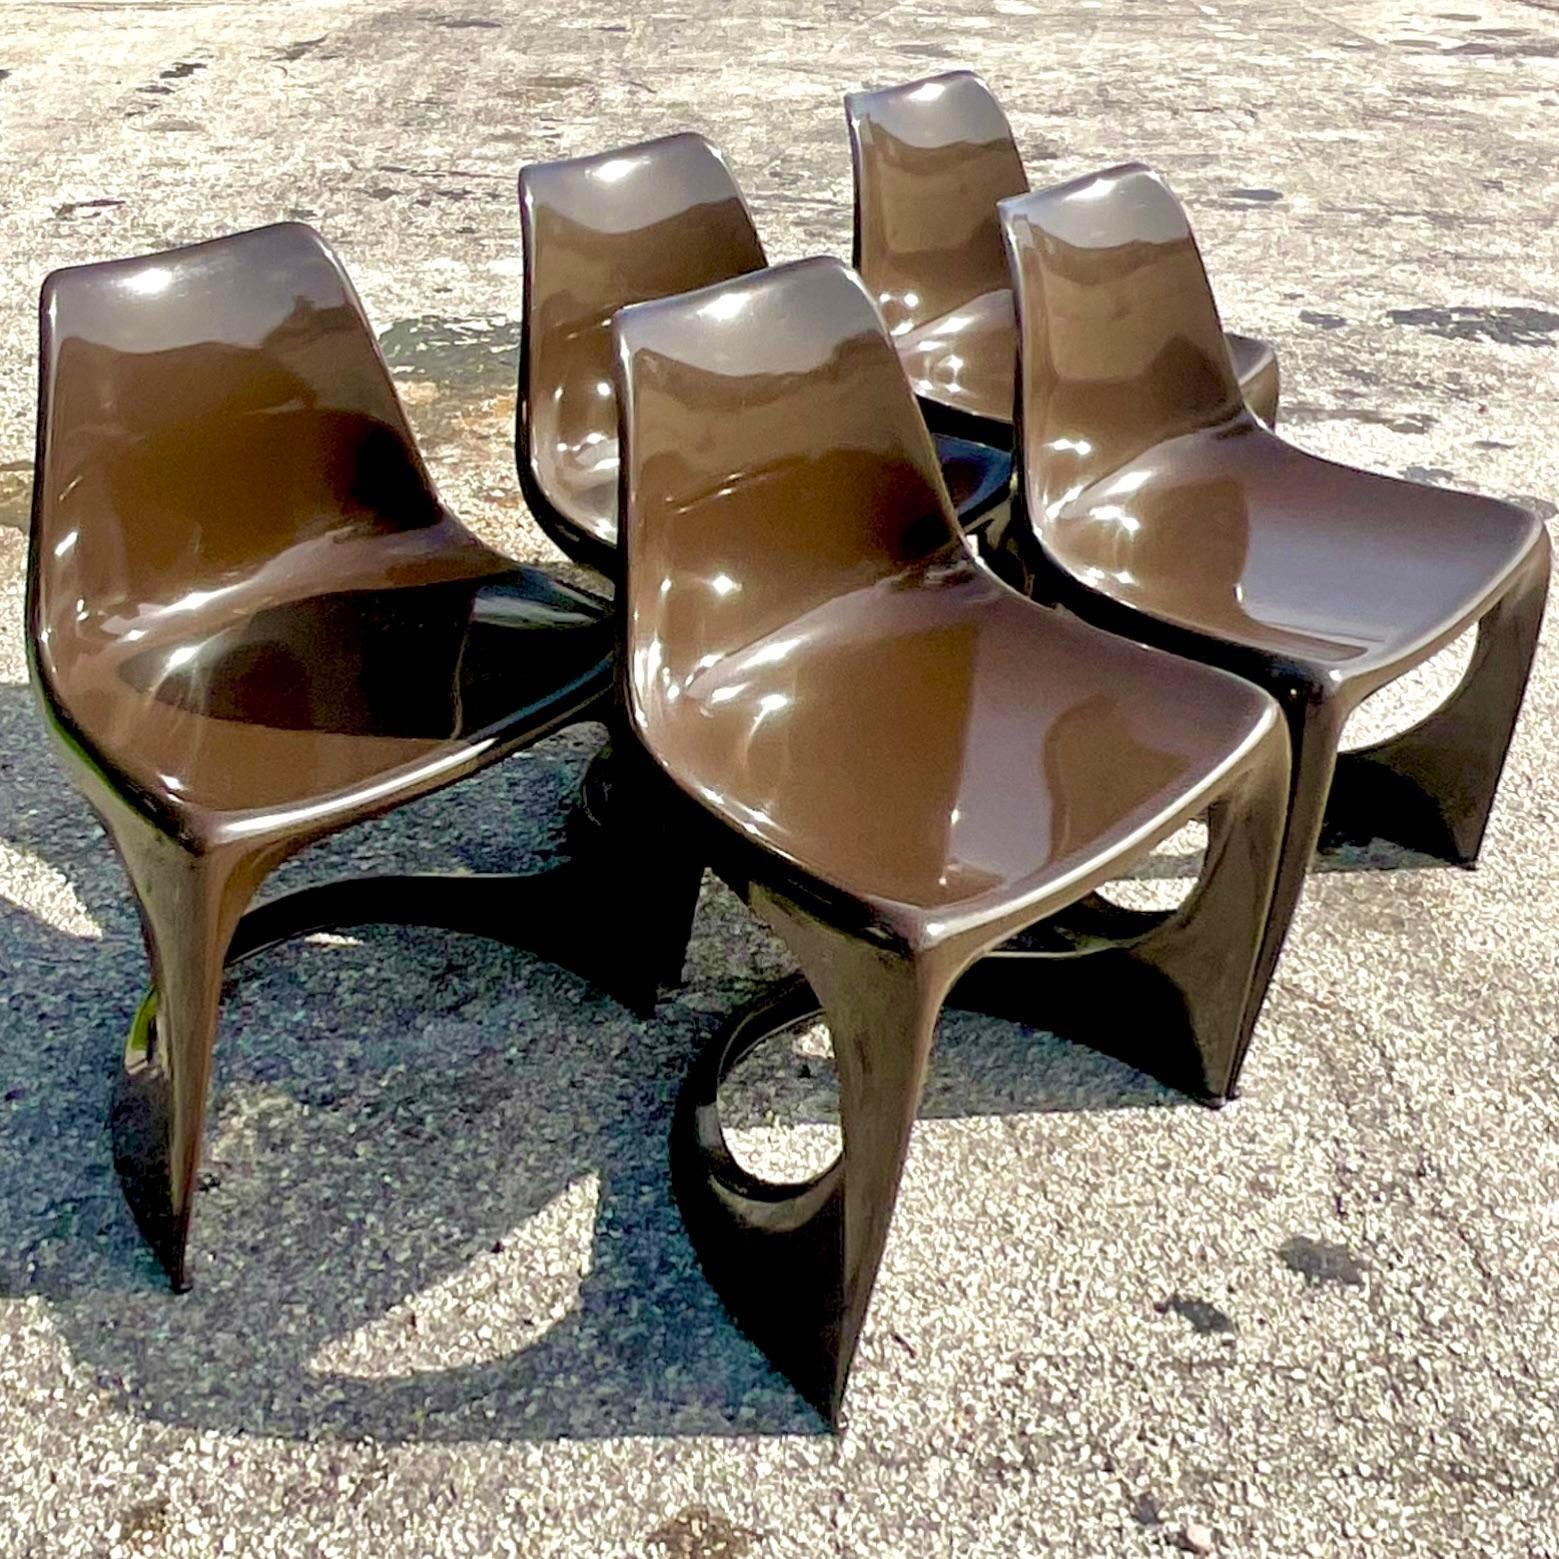 Un fabuleux ensemble de 5 chaises de salle à manger Boho vintage. Conçu par Steens Ostergaard pour Cado. Un brun chocolat chic et un dessous tagué. Acquis d'une propriété de Palm Beach.